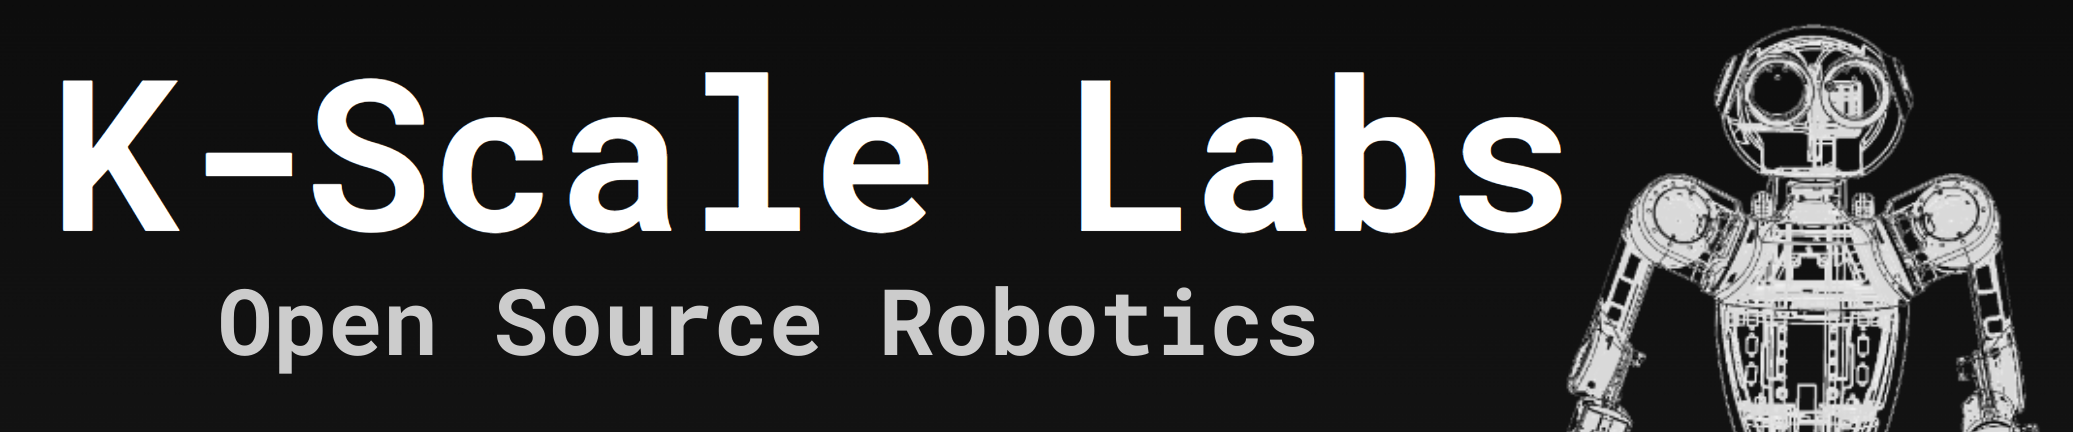 K-Scale Open Source Robotics